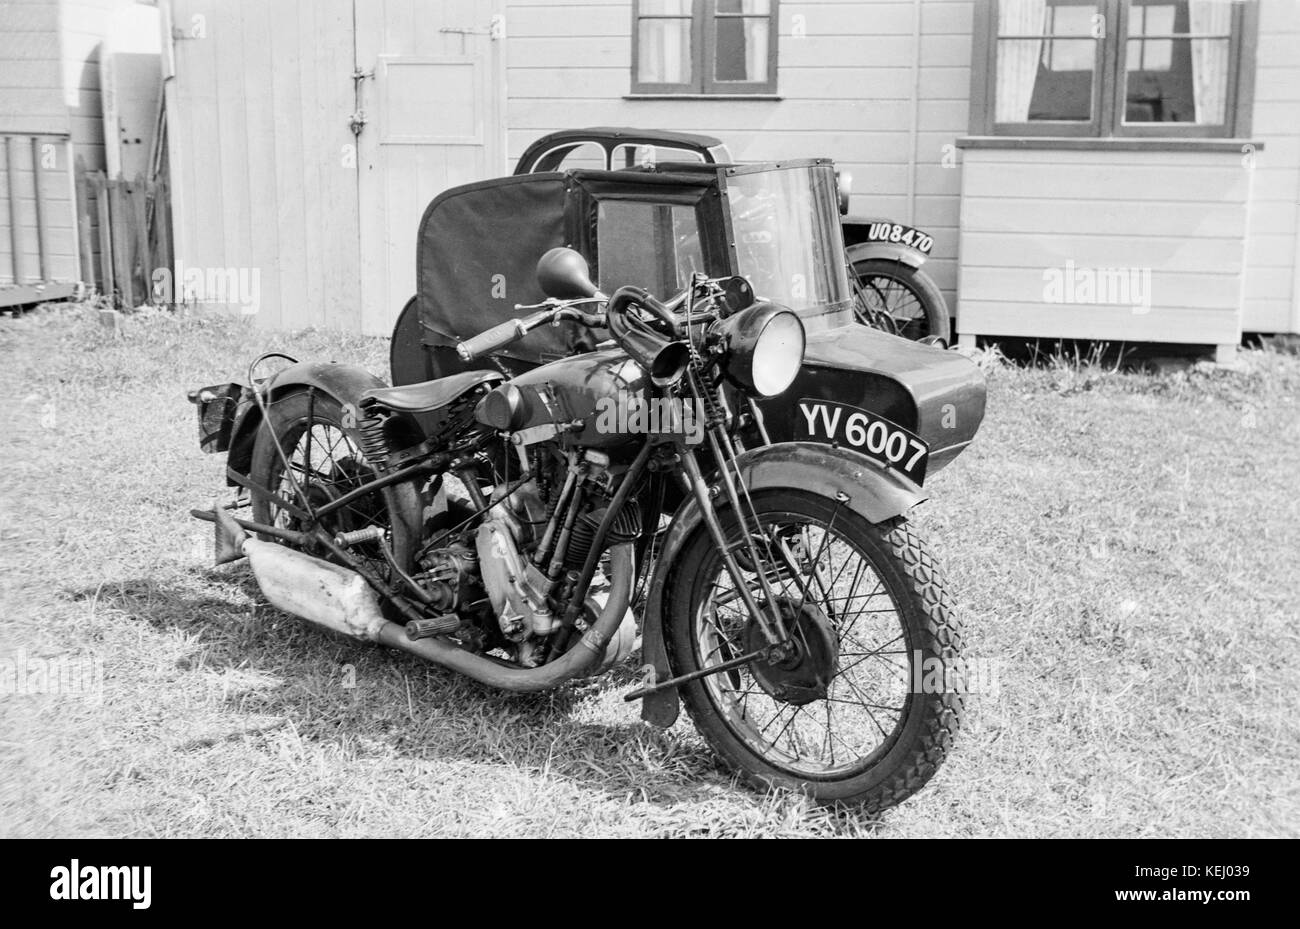 BSA Sloper vintage britannique avec side-car moto.Le BSA S-Series de motos, plus communément connu sous le nom de la BSA Sloper, étaient une série de motos produites par le Birmingham Small Arms Company (BSA) à partir de 1927-1935. Lancé en 1927, la 493cc moteur à soupapes en tête, et l'incliné a présenté un réservoir selle moto qui a permis une amélioration de la position assise basse, le centre de gravité et de manutention. Désigné comme le nouveau S-series, s'il se tenait pour la vitesse ou le silence sloper, est inconnu, mais est devenu le sloper terme utilisé par les motocyclistes et, par conséquent, adopté par BSA pour la commercialisation. Banque D'Images